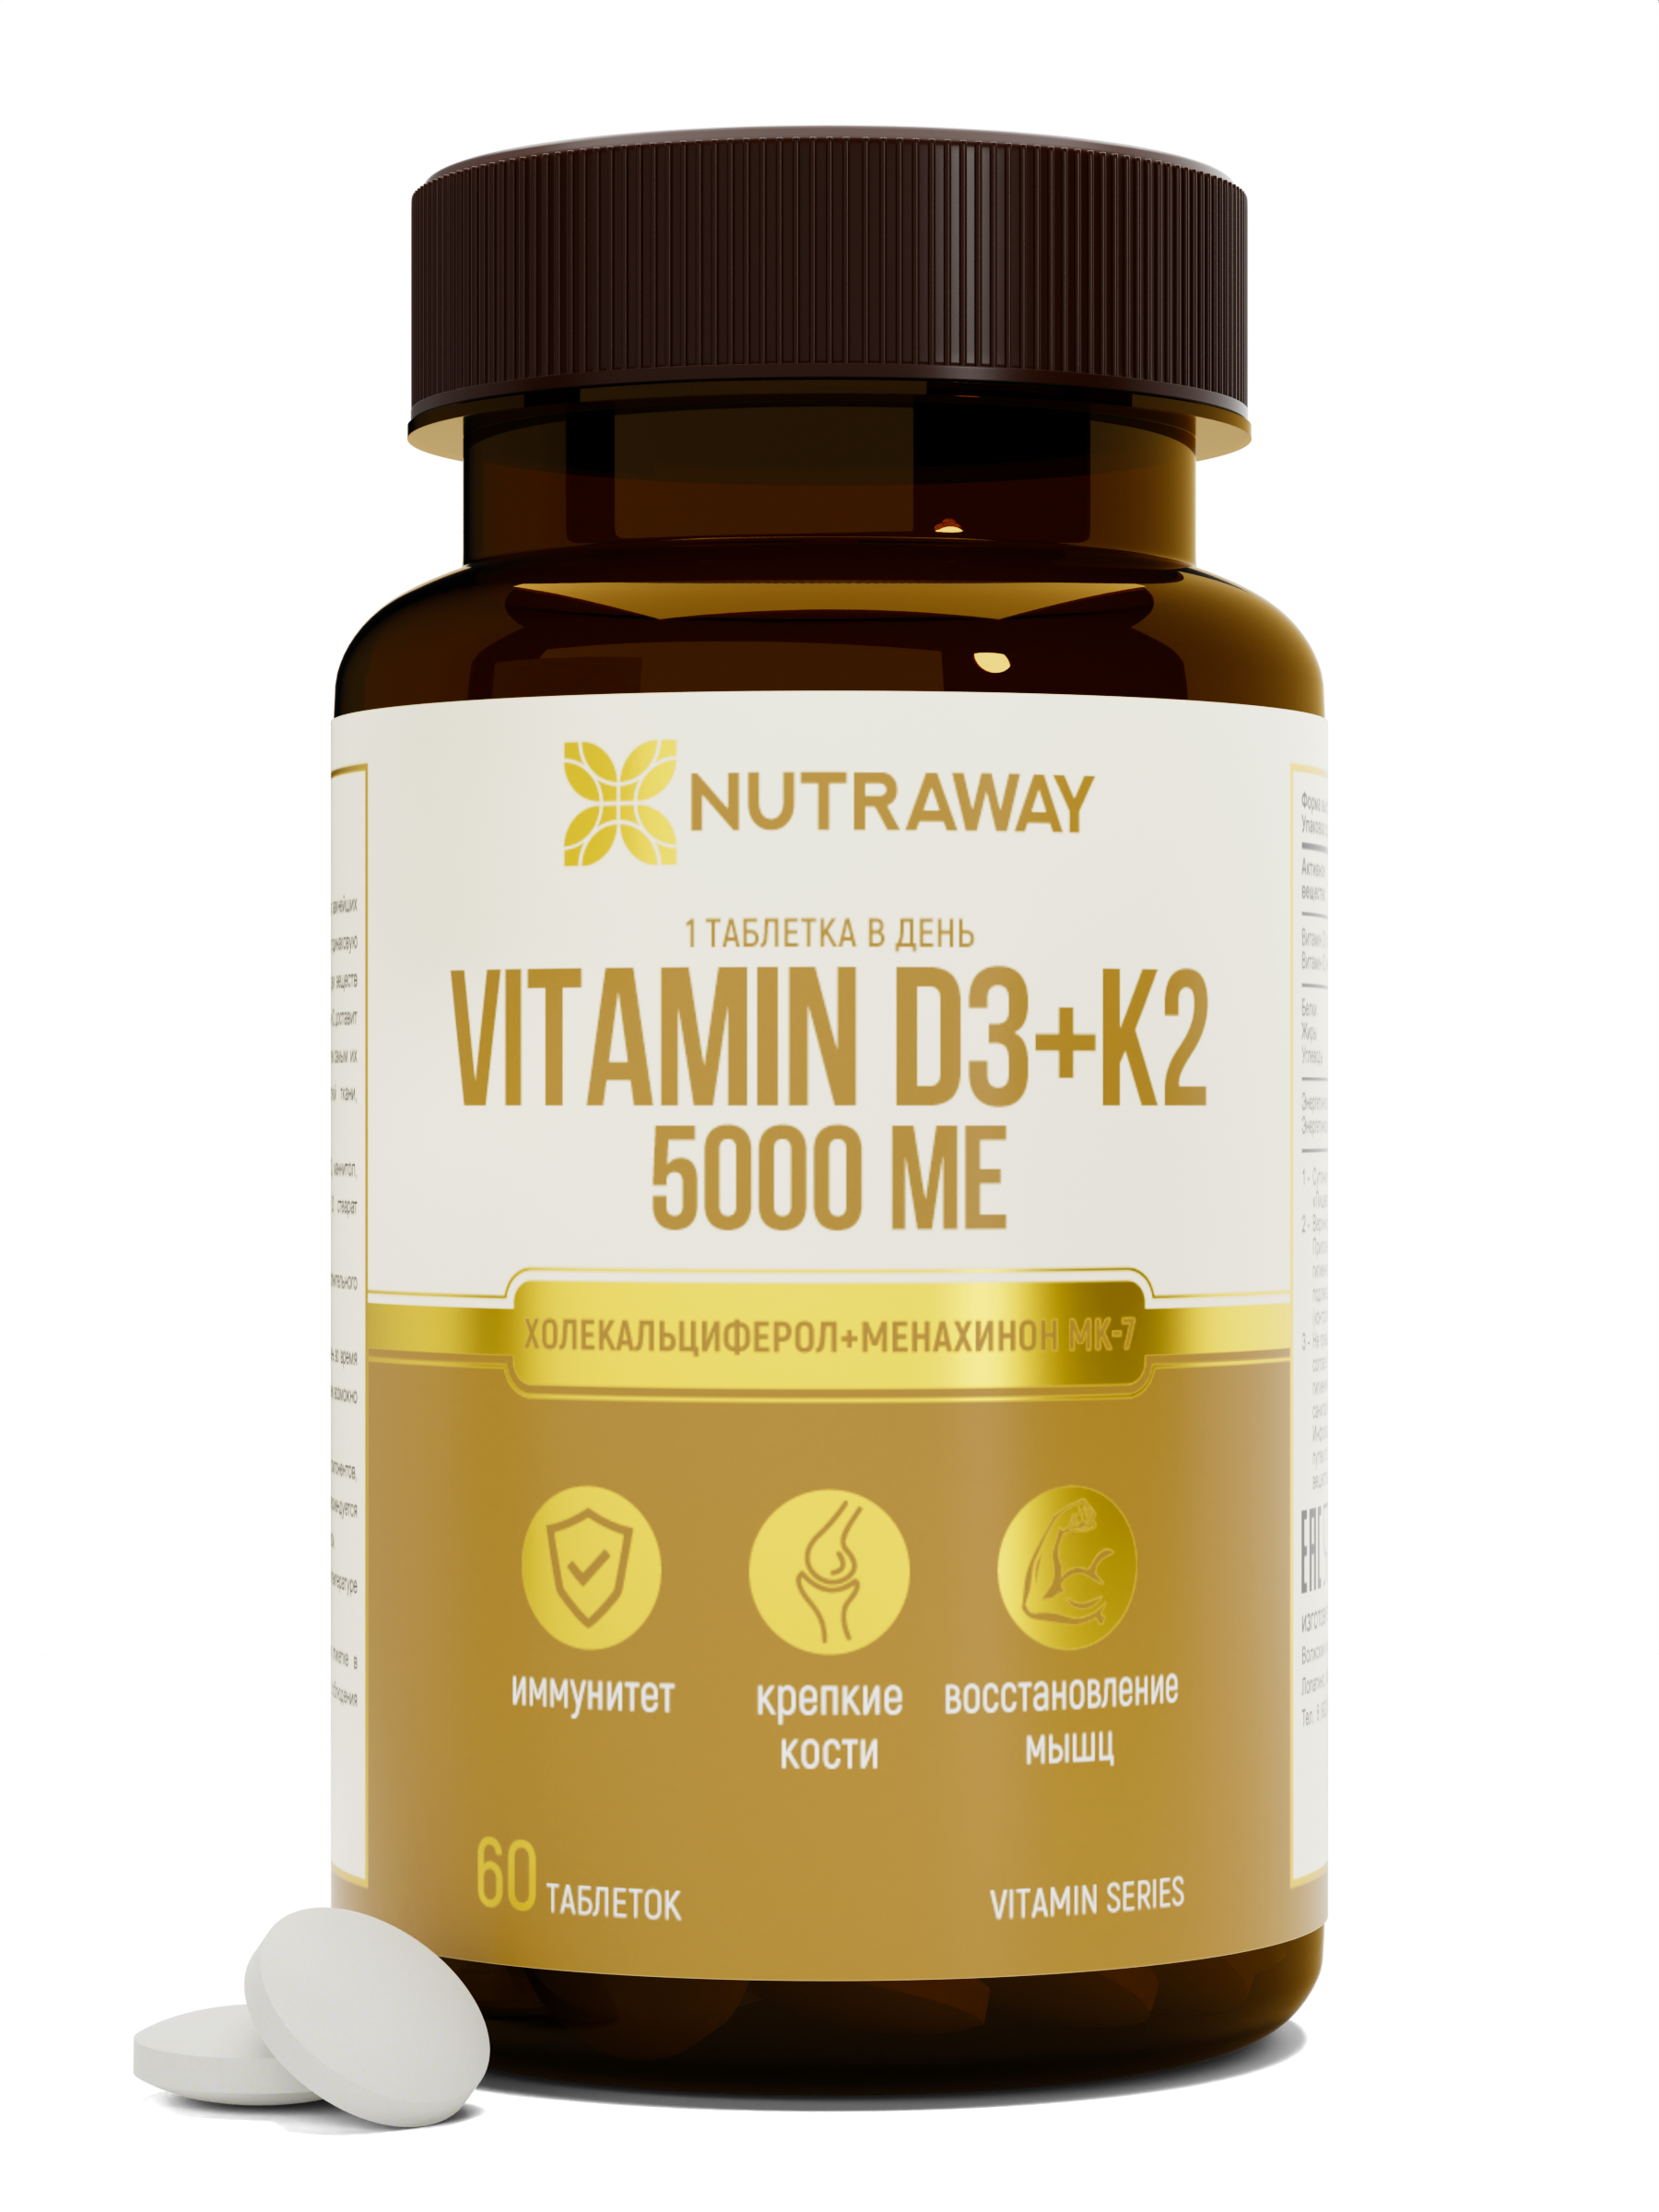 Купить Витамин Д3+К2 NUTRAWAY Vitamin D3+К2 таблетки 5000 ME 60 шт